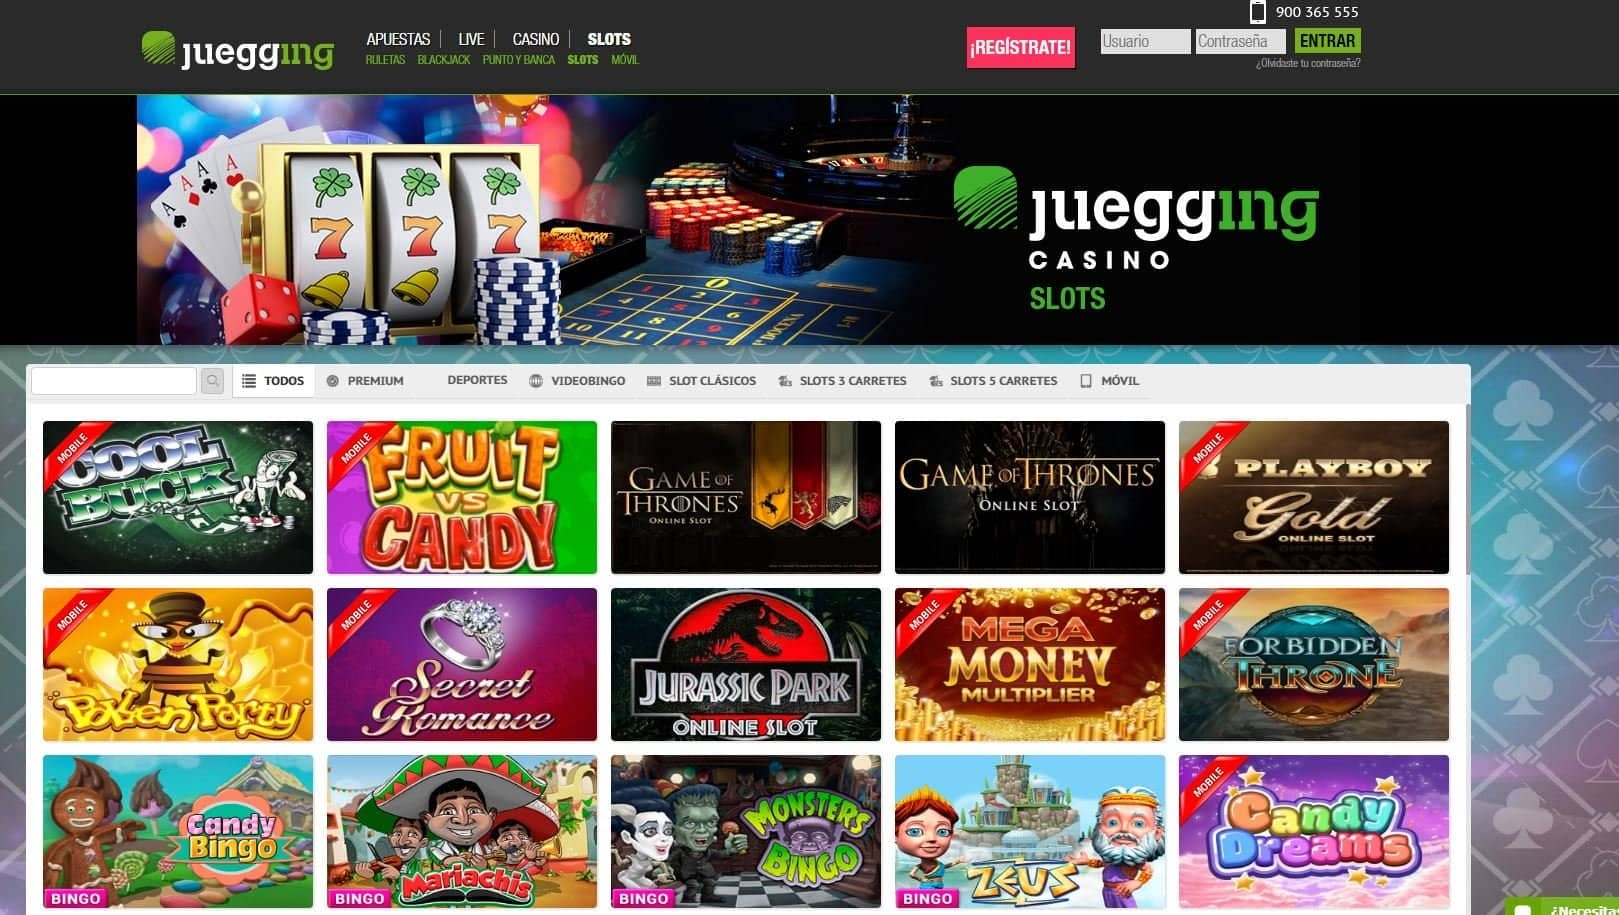 "juegos de slot online en juegging